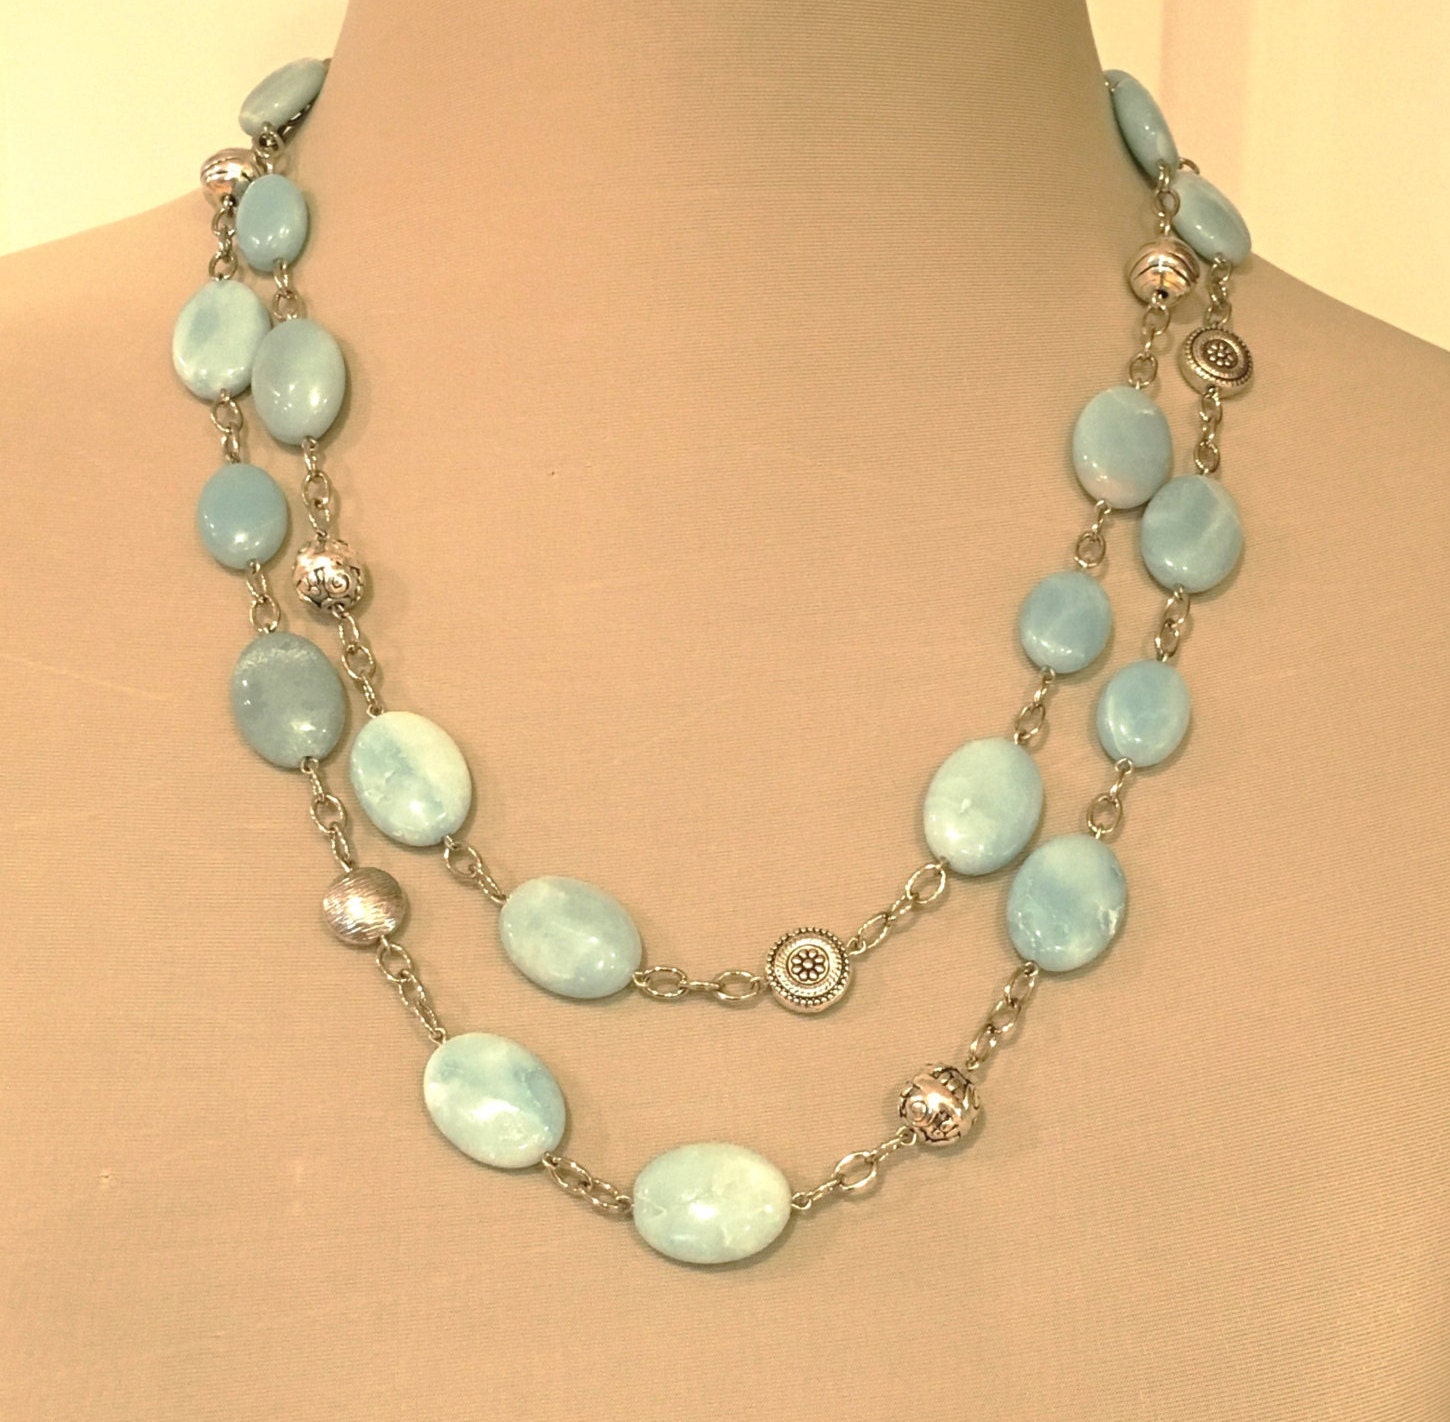 Amazonite Beaded Necklace Long Beaded Necklace Blue Gemstone